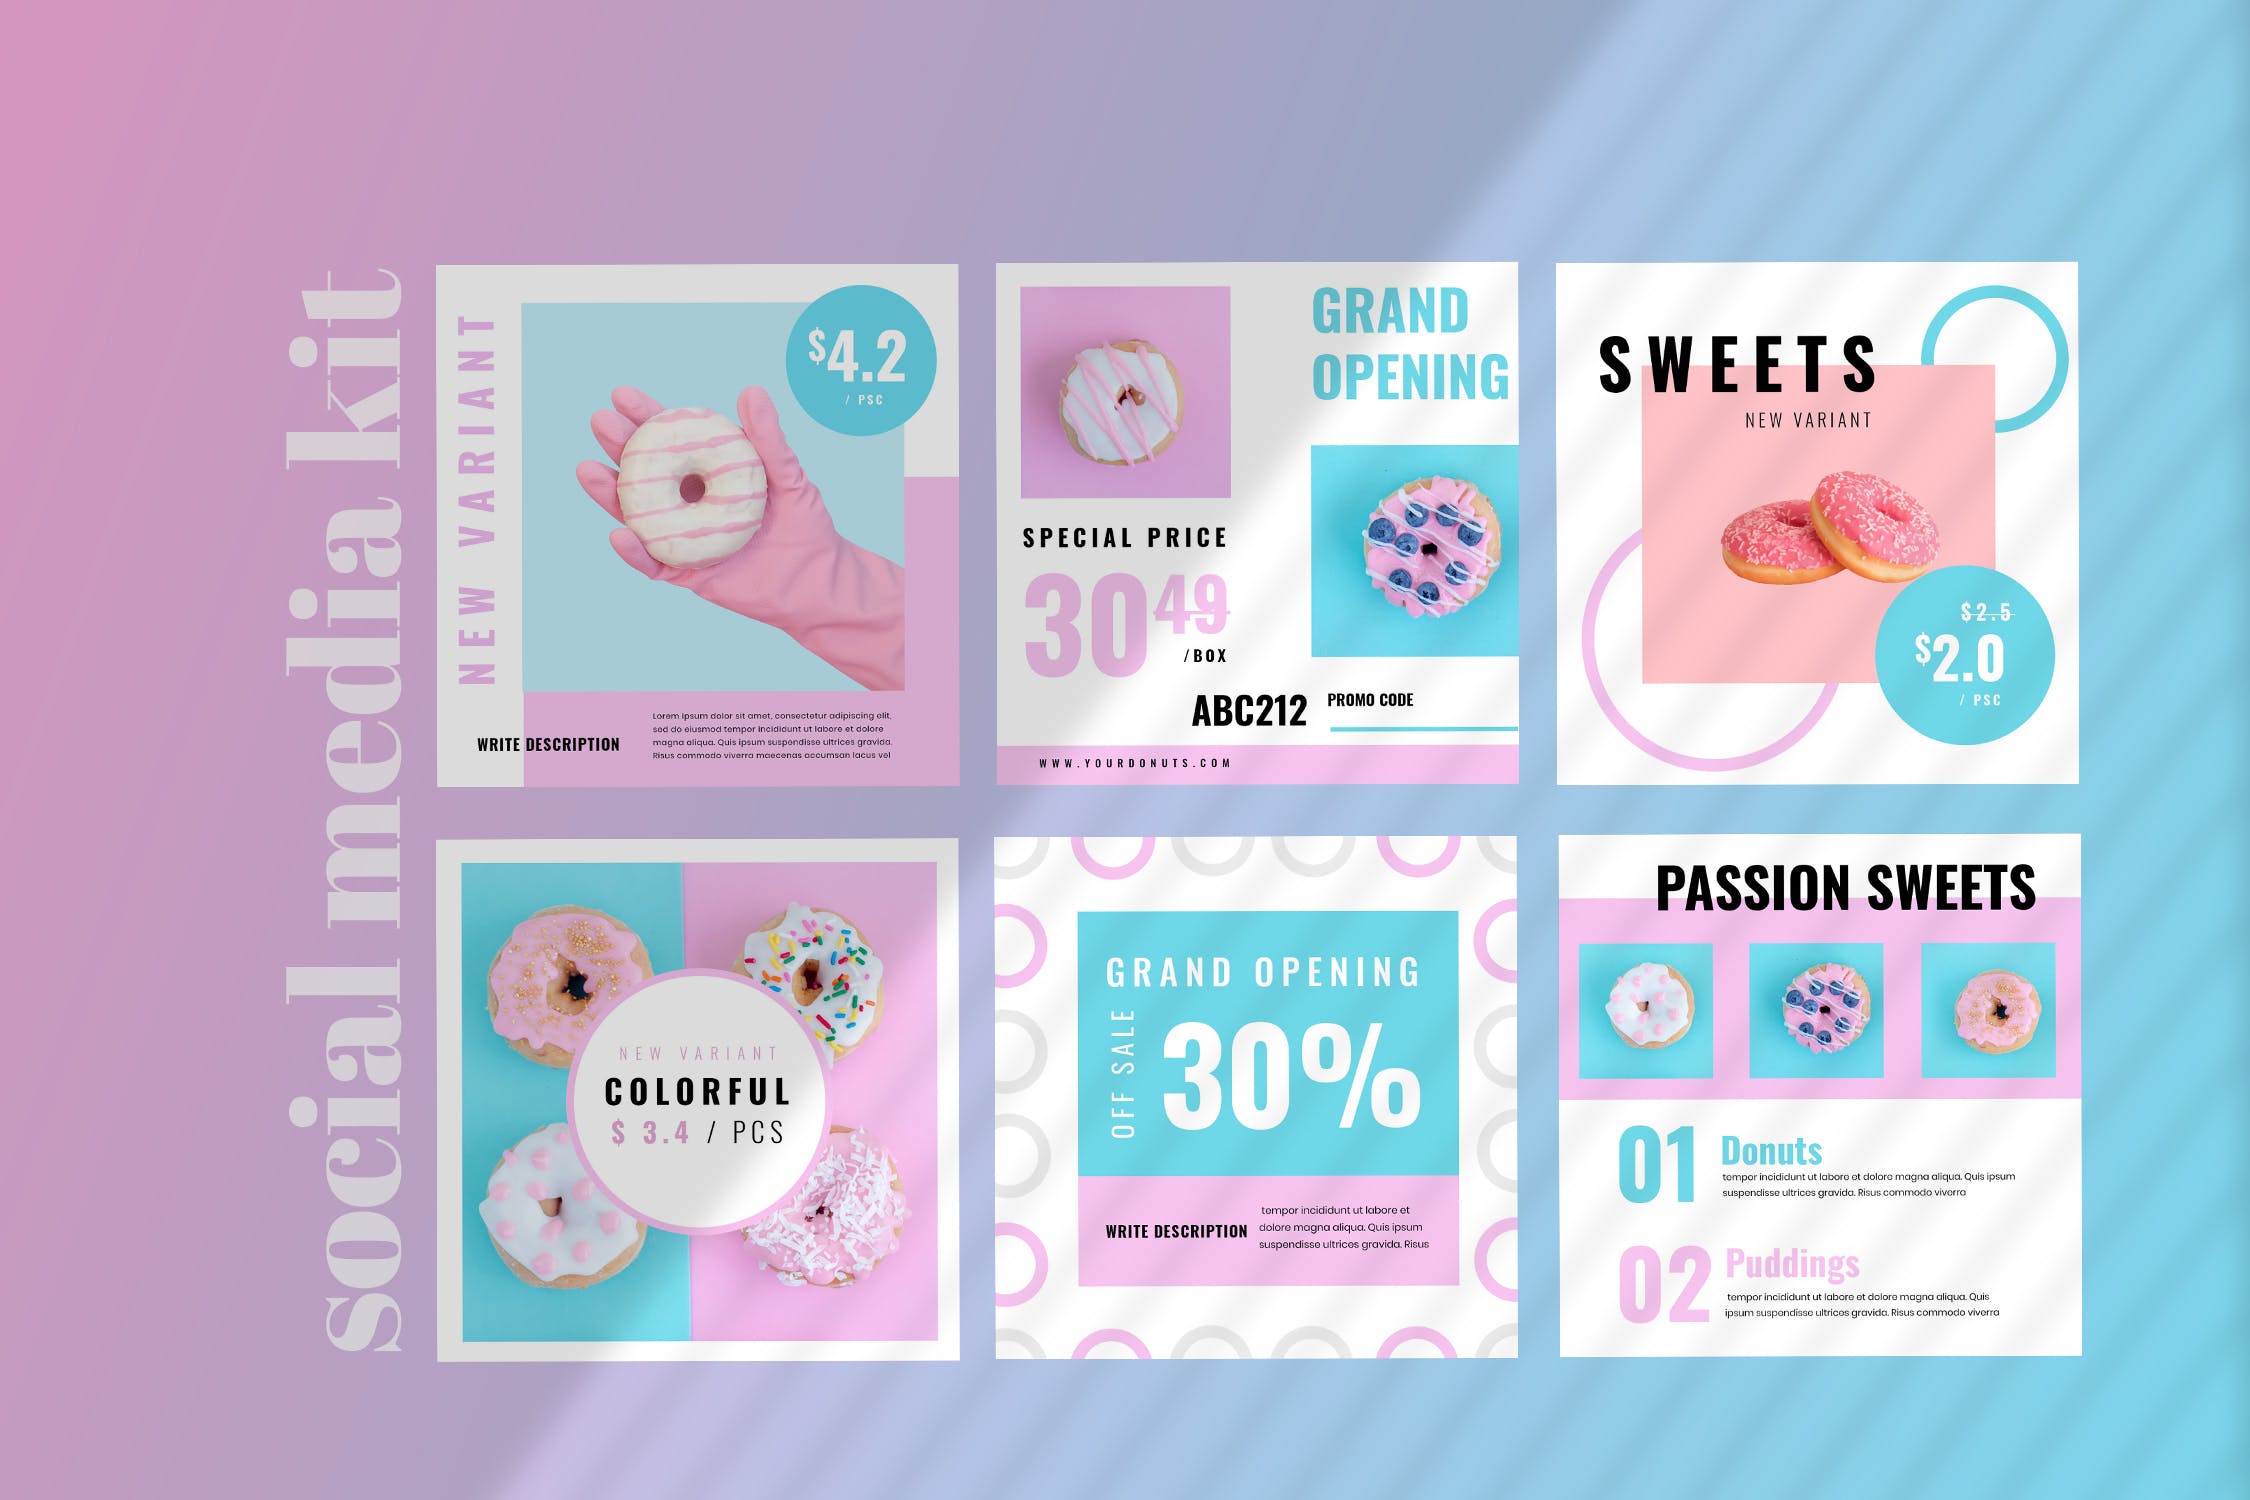 烘焙糕点面包品牌社交推广设计素材包 Fiveteen – Social Media Kit插图